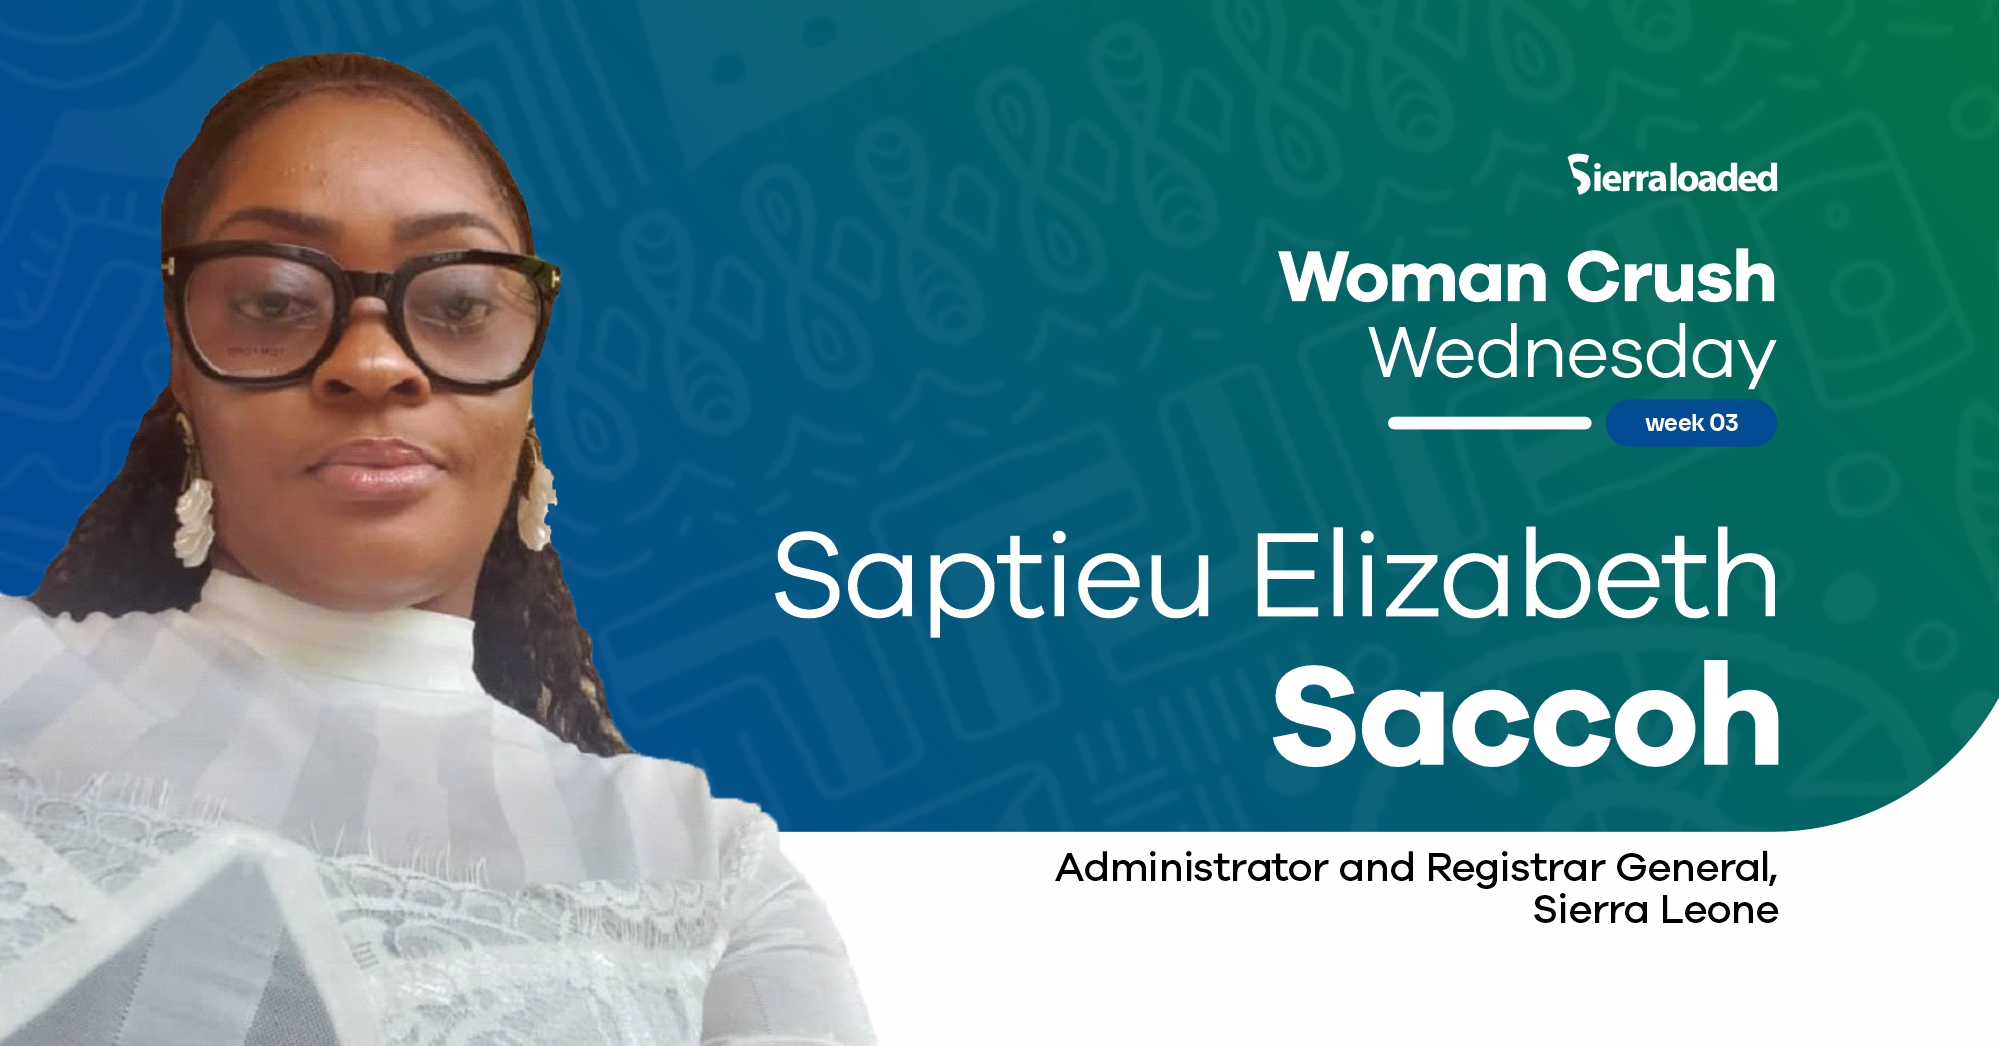 Meet Saptieu Elizabeth Saccoh, Sierraloaded Woman Crush